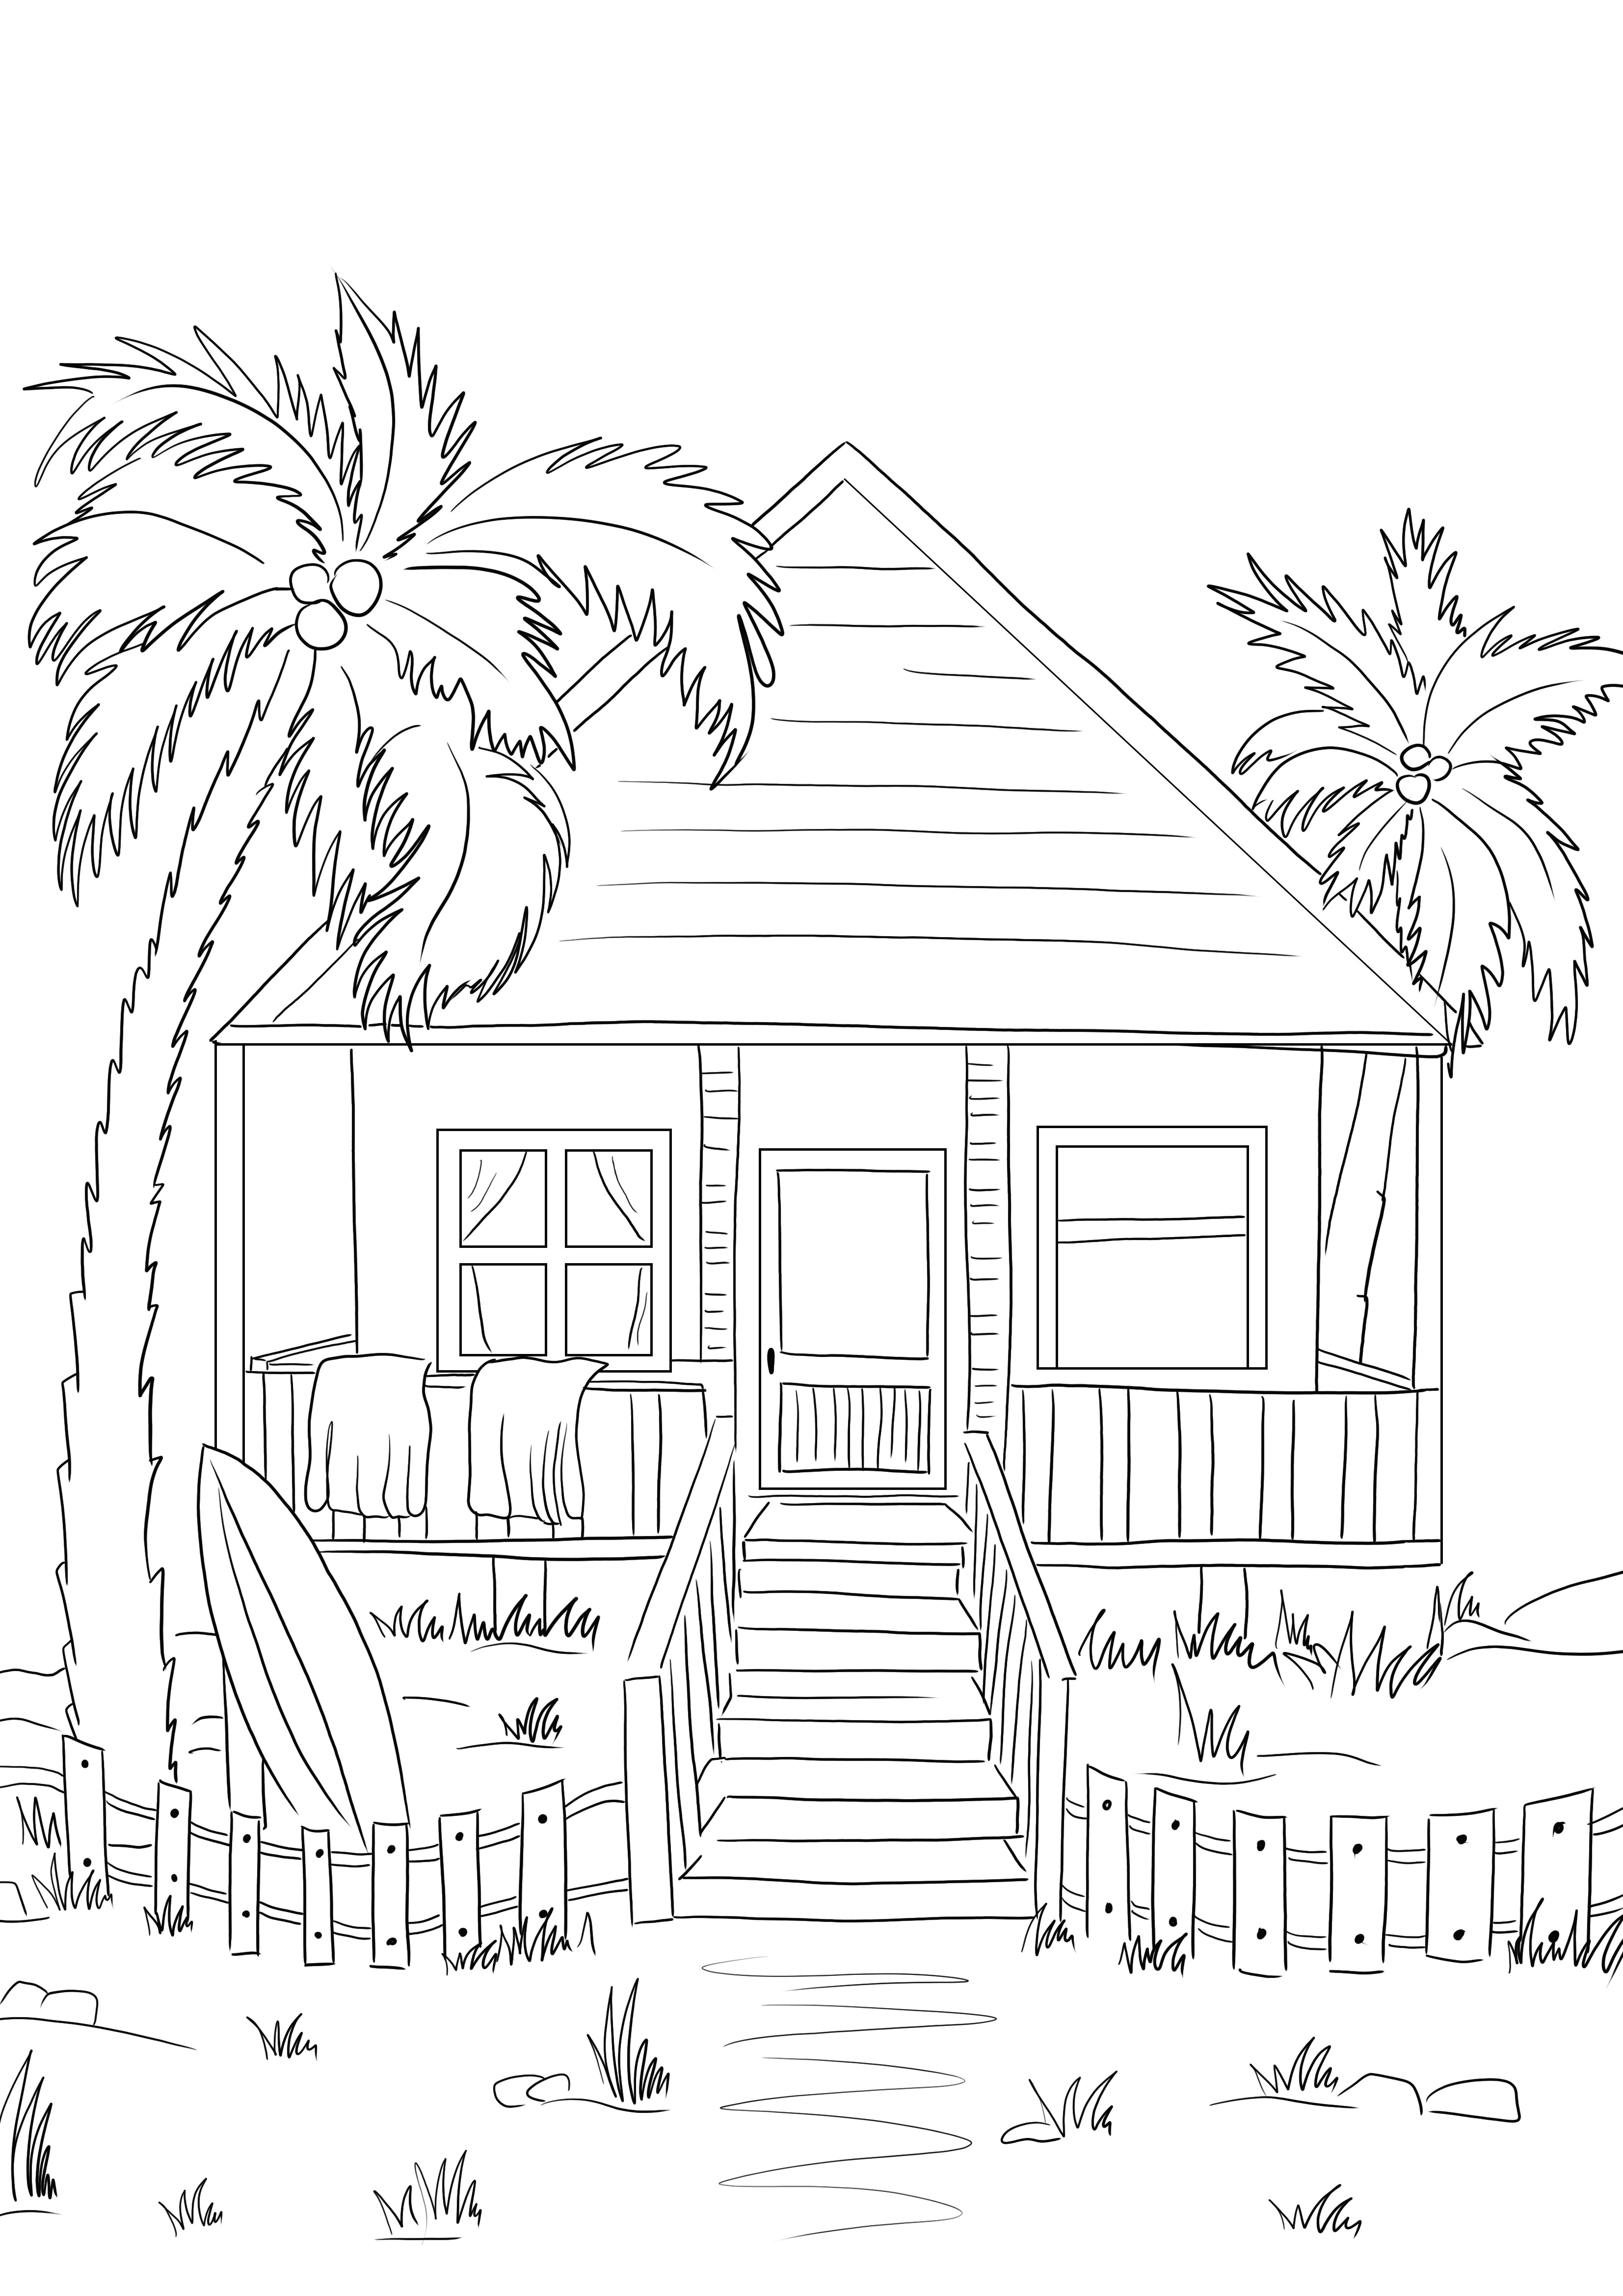 Stampa gratuita di un'immagine da colorare Beach House semplice da colorare